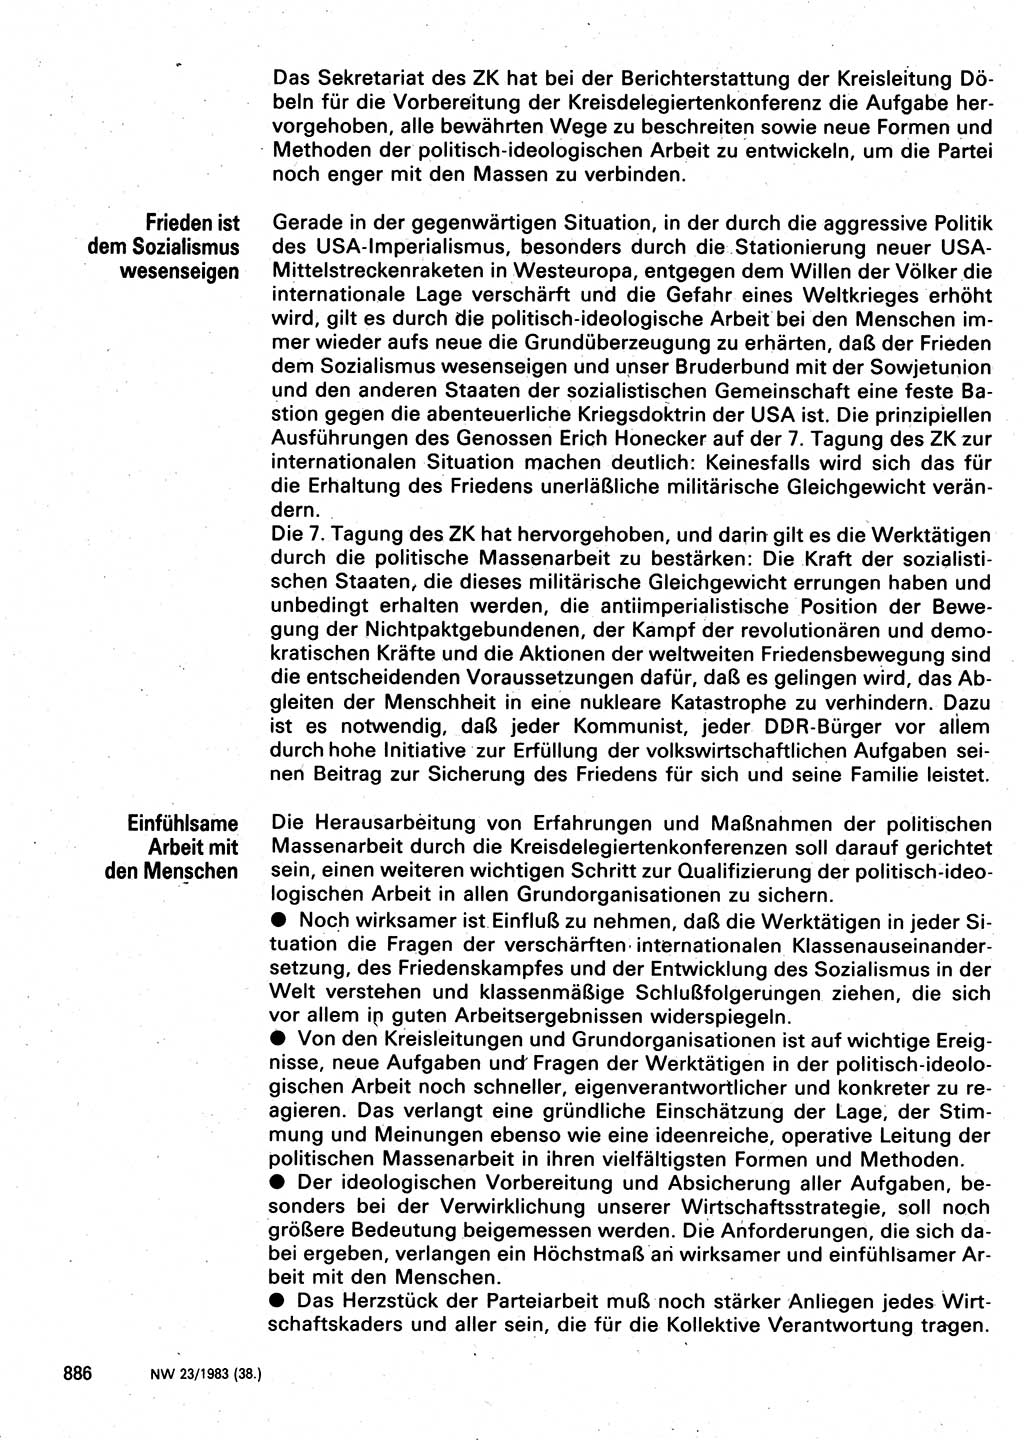 Neuer Weg (NW), Organ des Zentralkomitees (ZK) der SED (Sozialistische Einheitspartei Deutschlands) für Fragen des Parteilebens, 38. Jahrgang [Deutsche Demokratische Republik (DDR)] 1983, Seite 886 (NW ZK SED DDR 1983, S. 886)